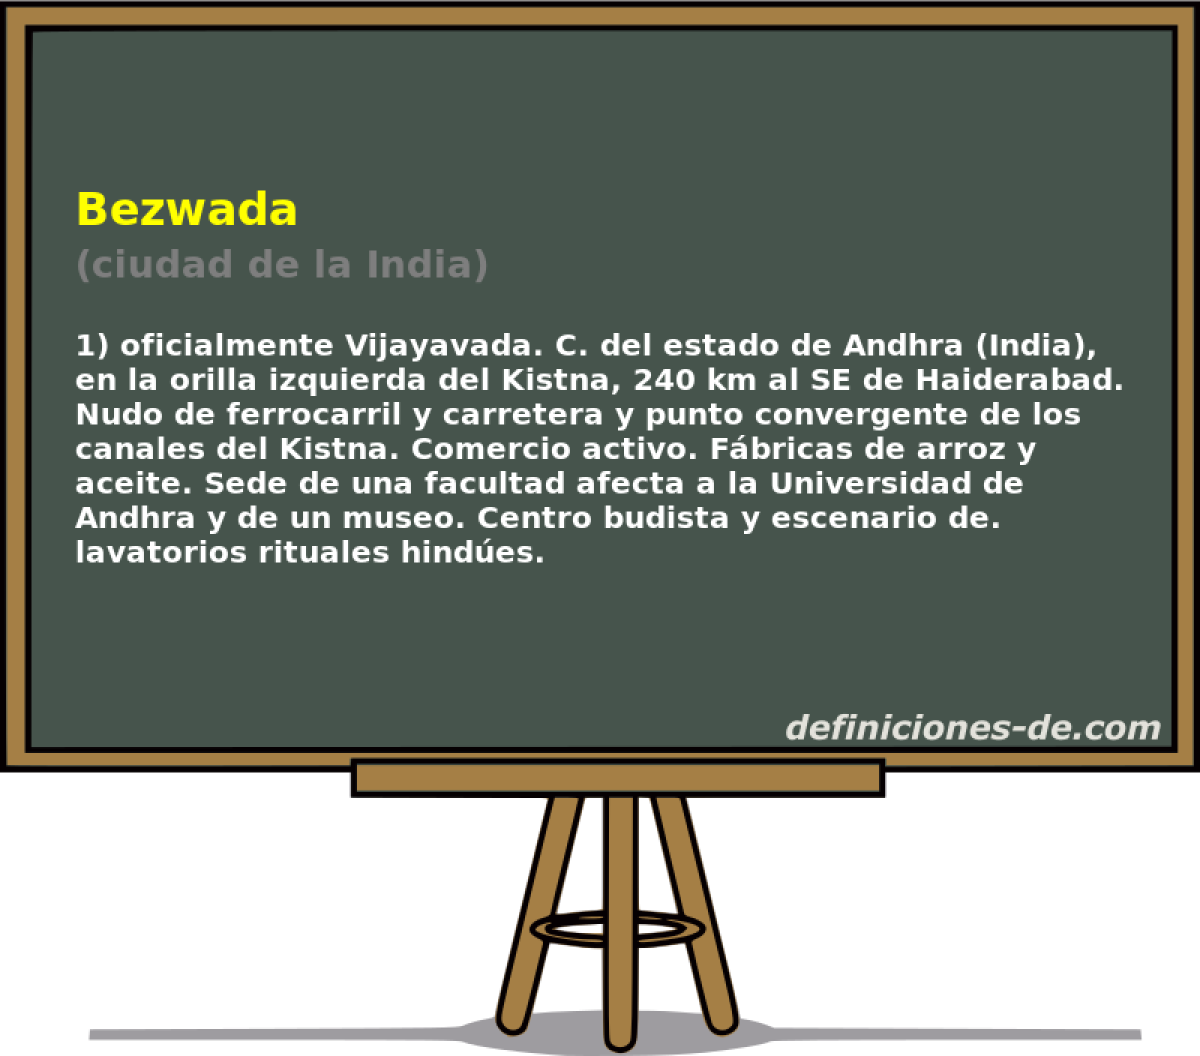 Bezwada (ciudad de la India)